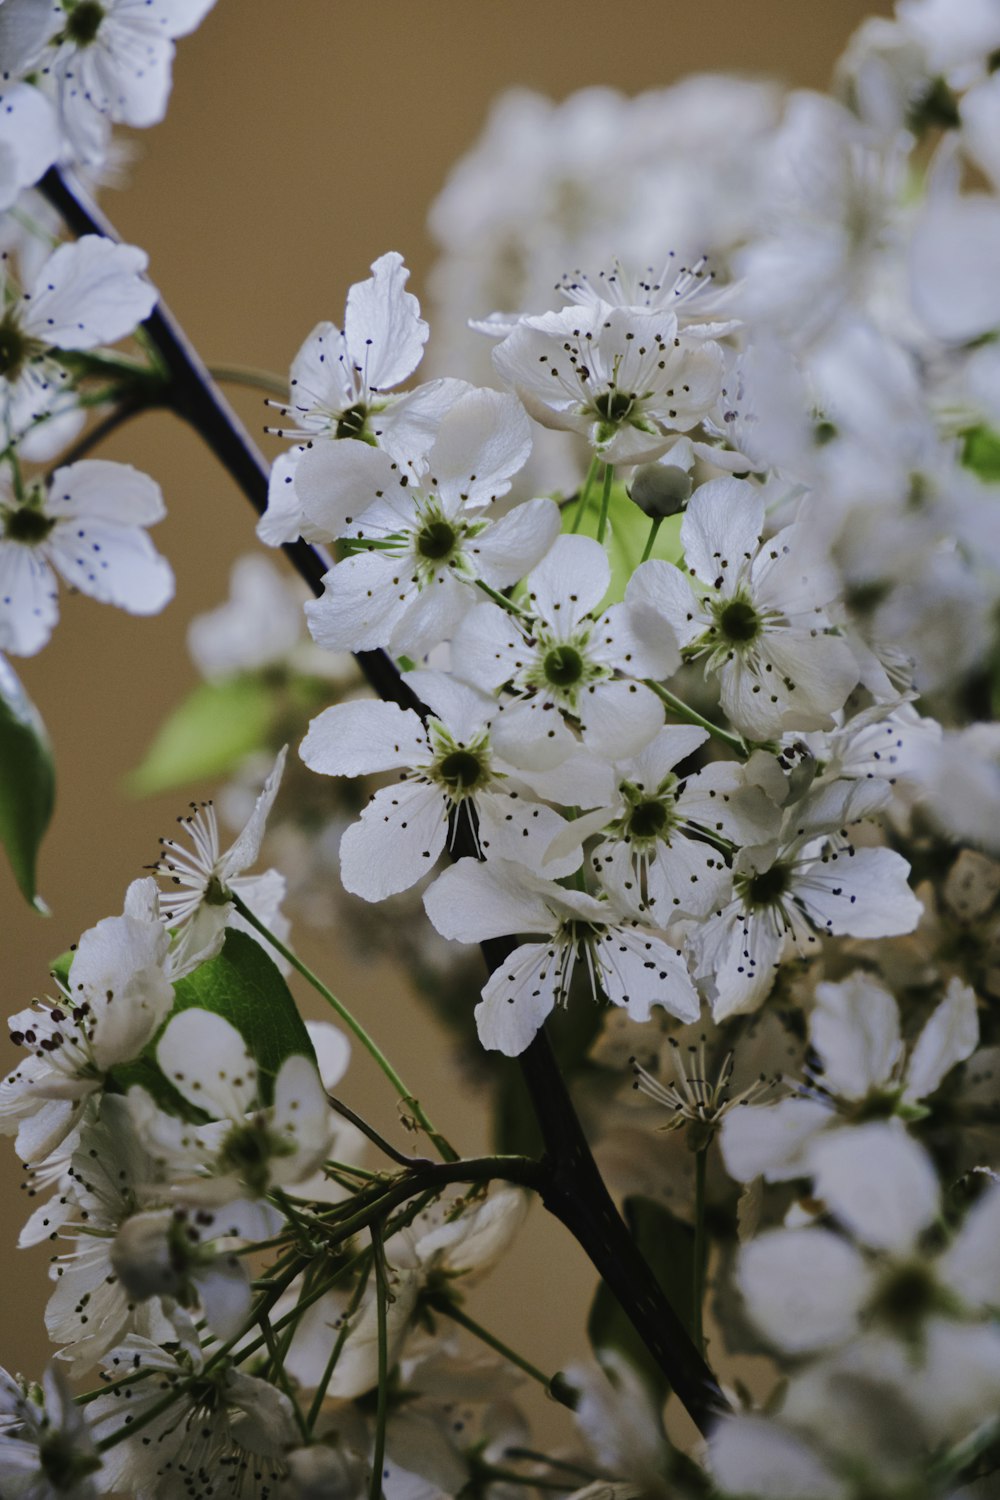 fotografia em close-up de flores brancas